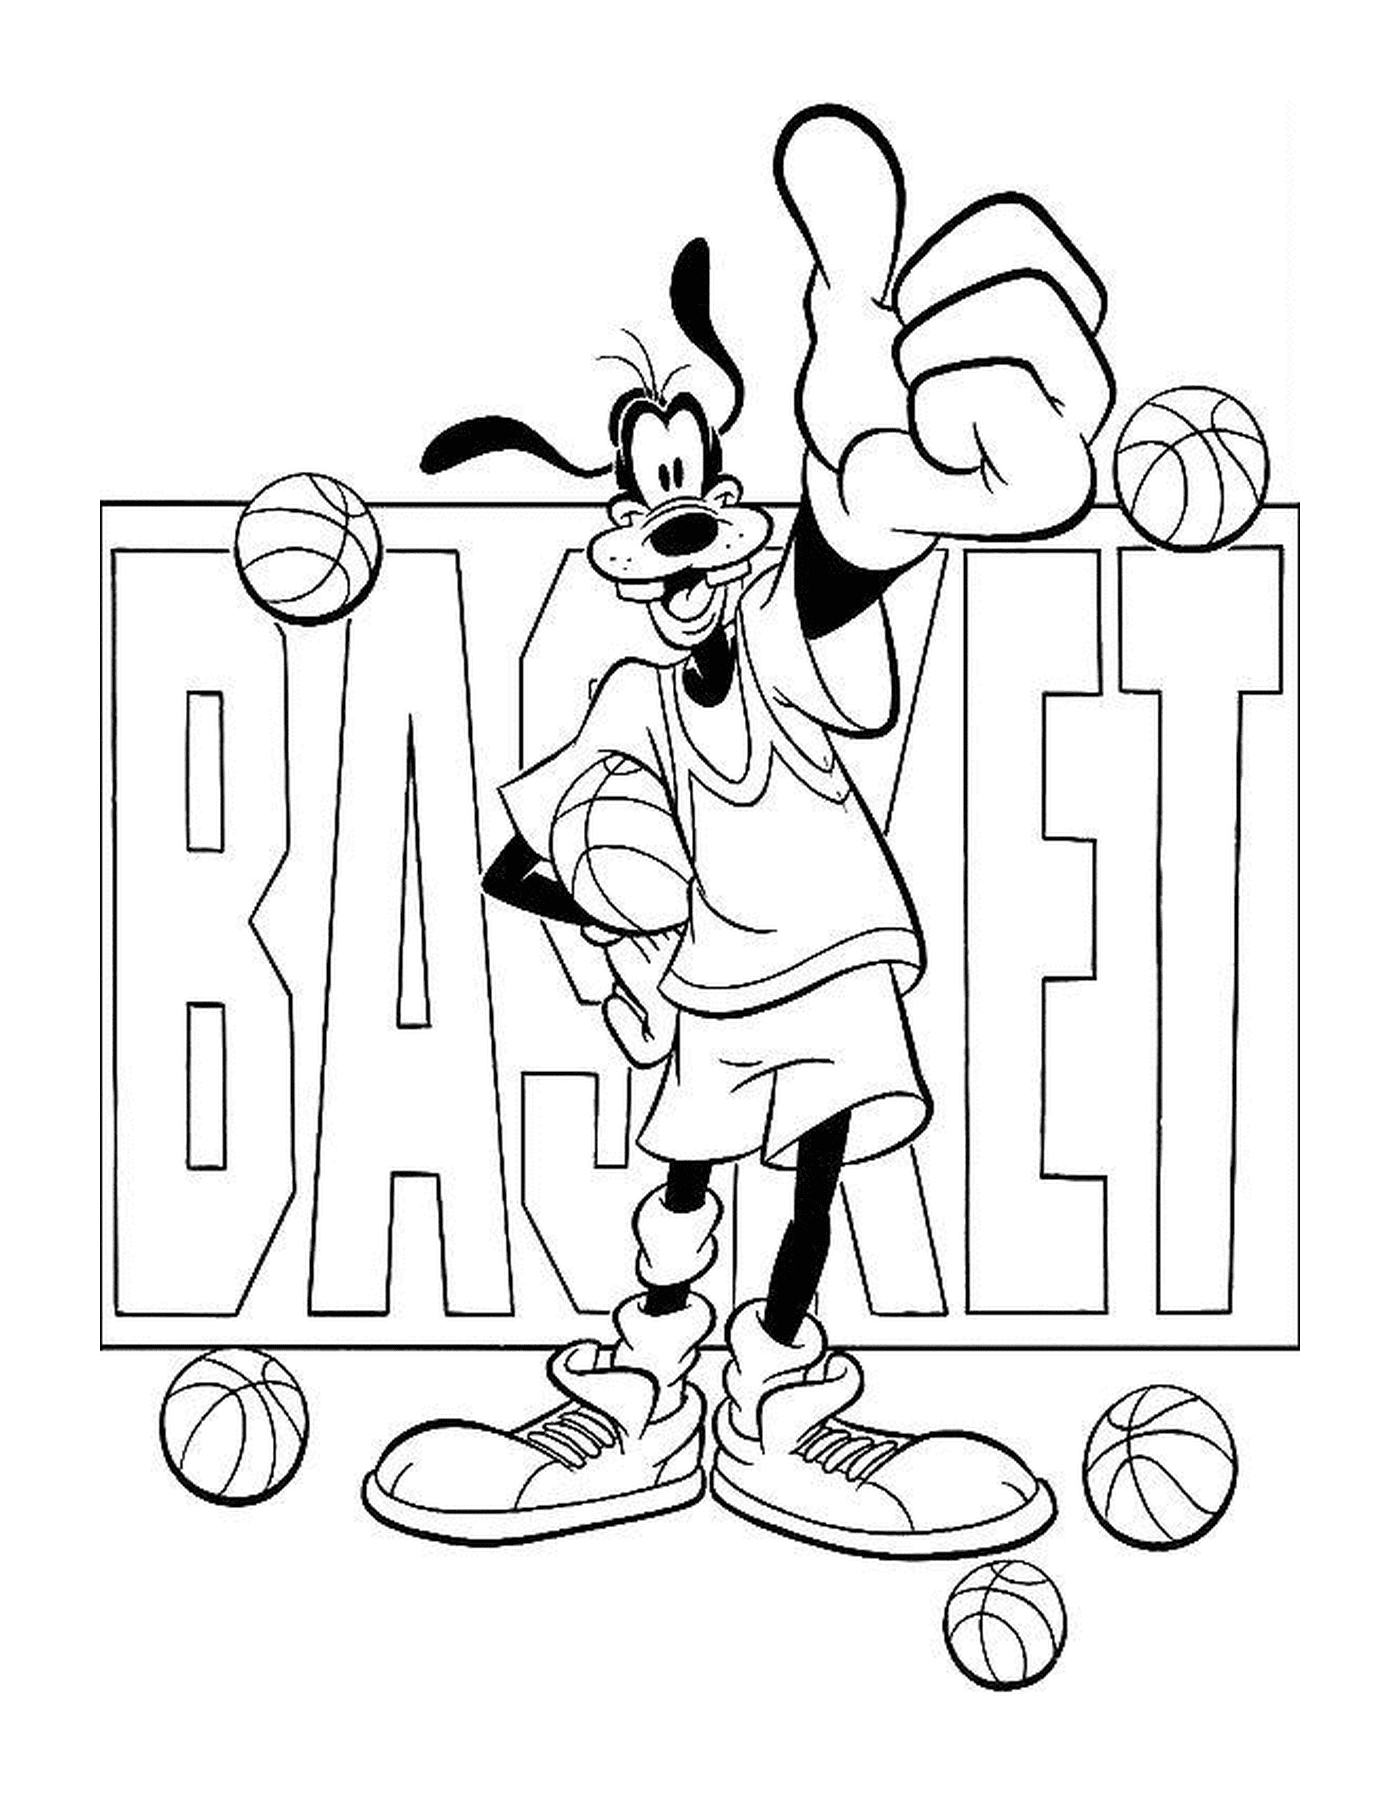   Dingo aime le basketball et tient un ballon devant le mot basket 